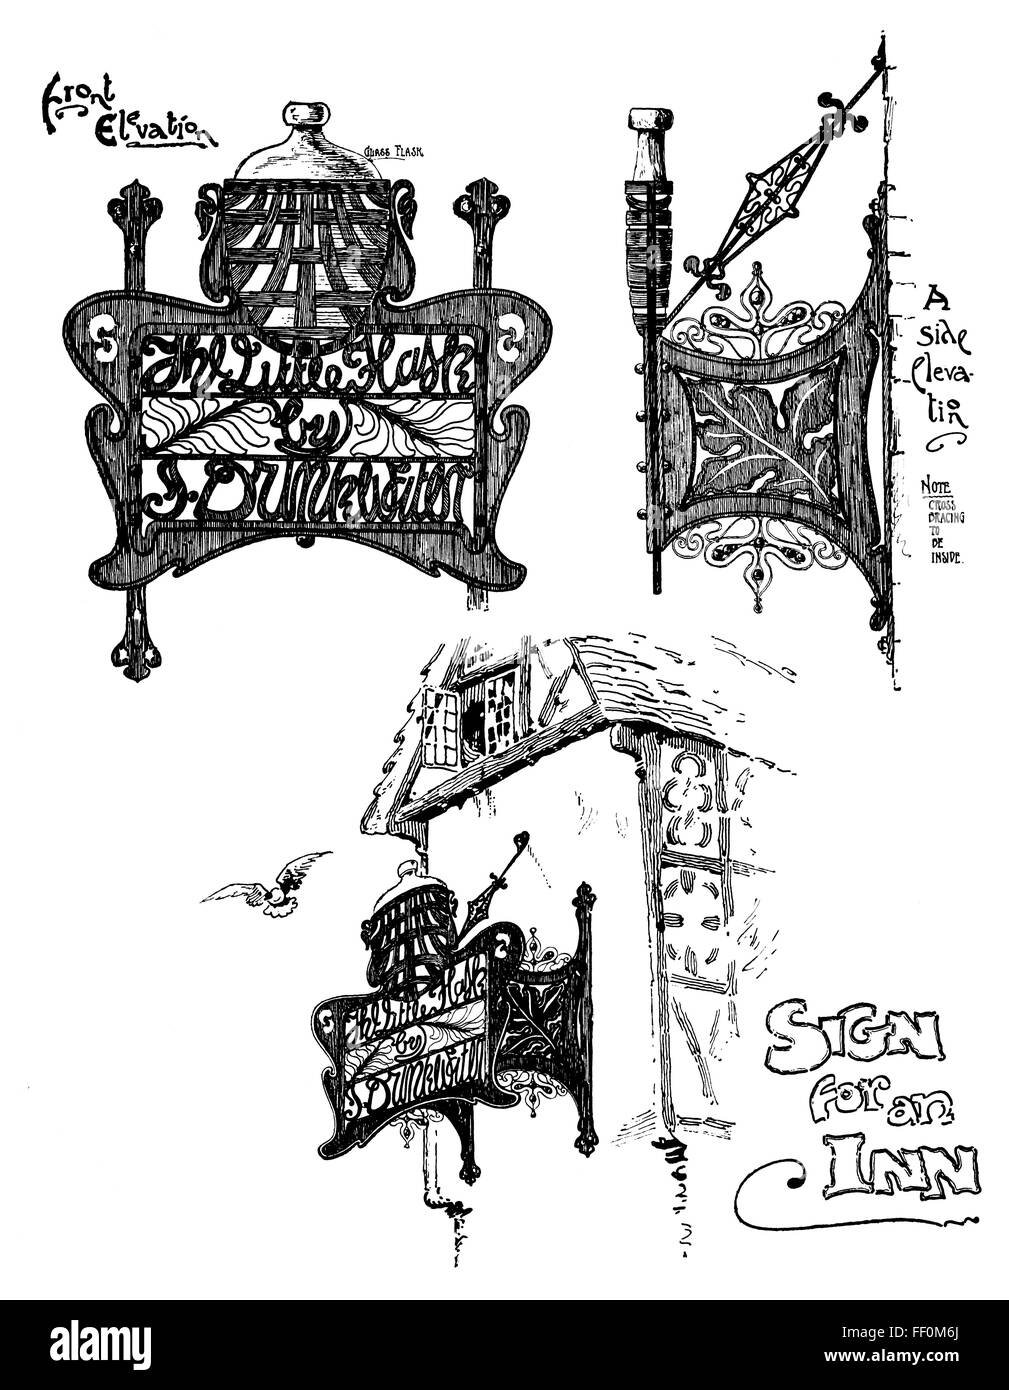 Signo de una posada, orfebrería de estilo art nouveau diseñado por Charles G Thompson de Liverpool, Ilustración de línea desde 1897 Studio Magazine Foto de stock